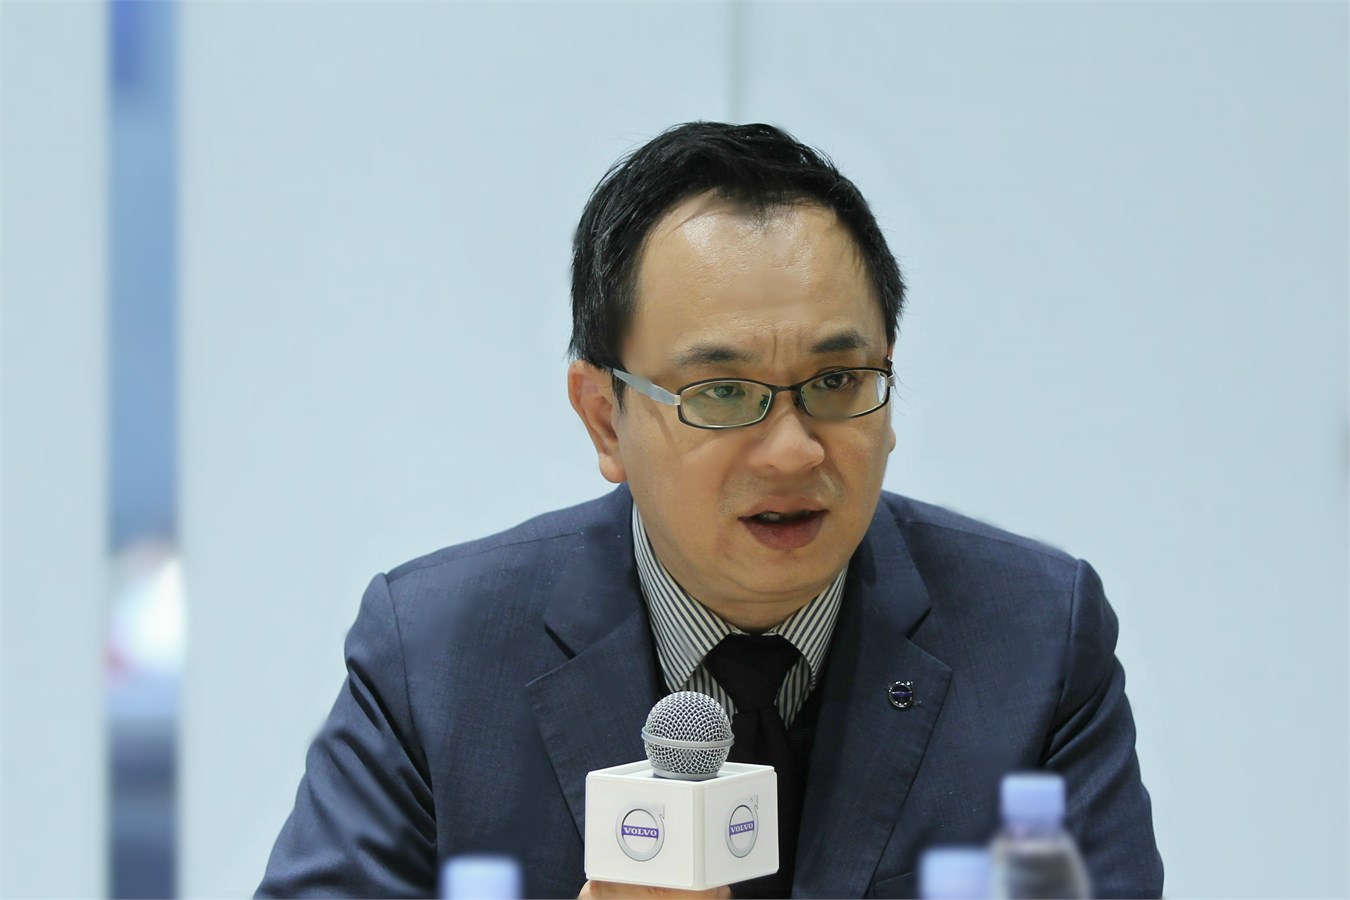 沃尔沃汽车集团大中华区销售公司总经理陈立哲接受媒体采访